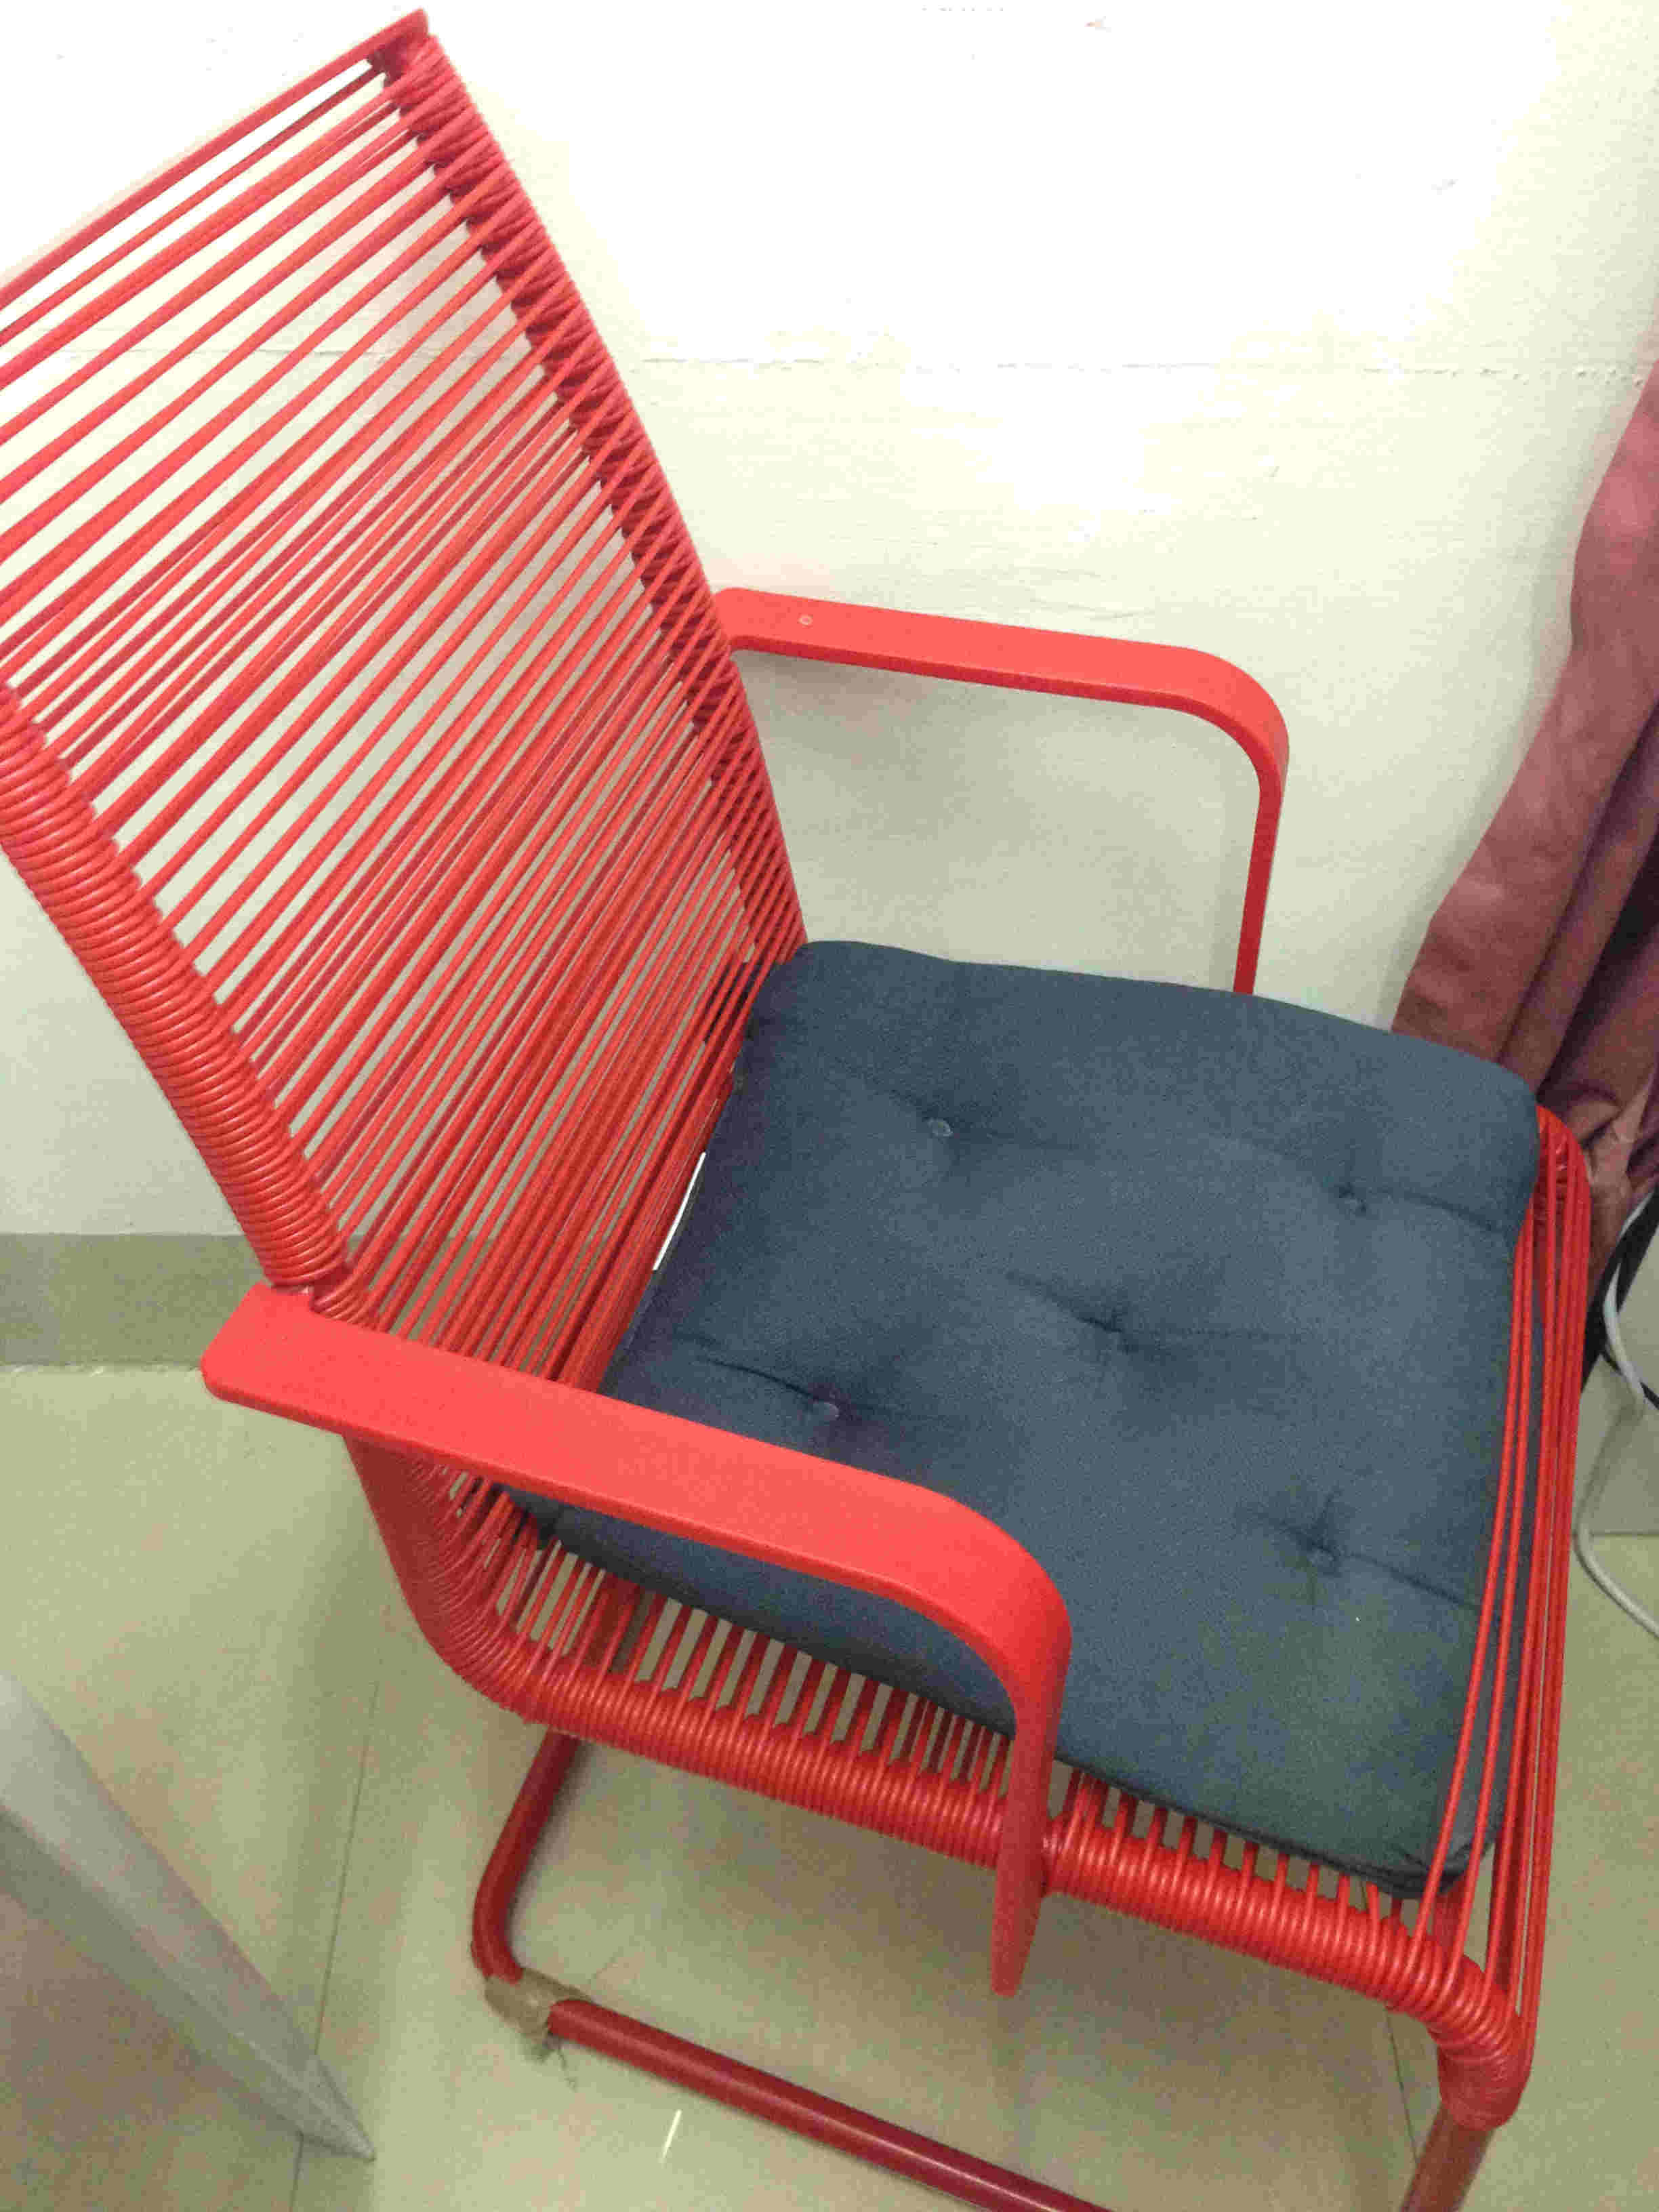 宜家椅子9.9999新15元送坐垫。